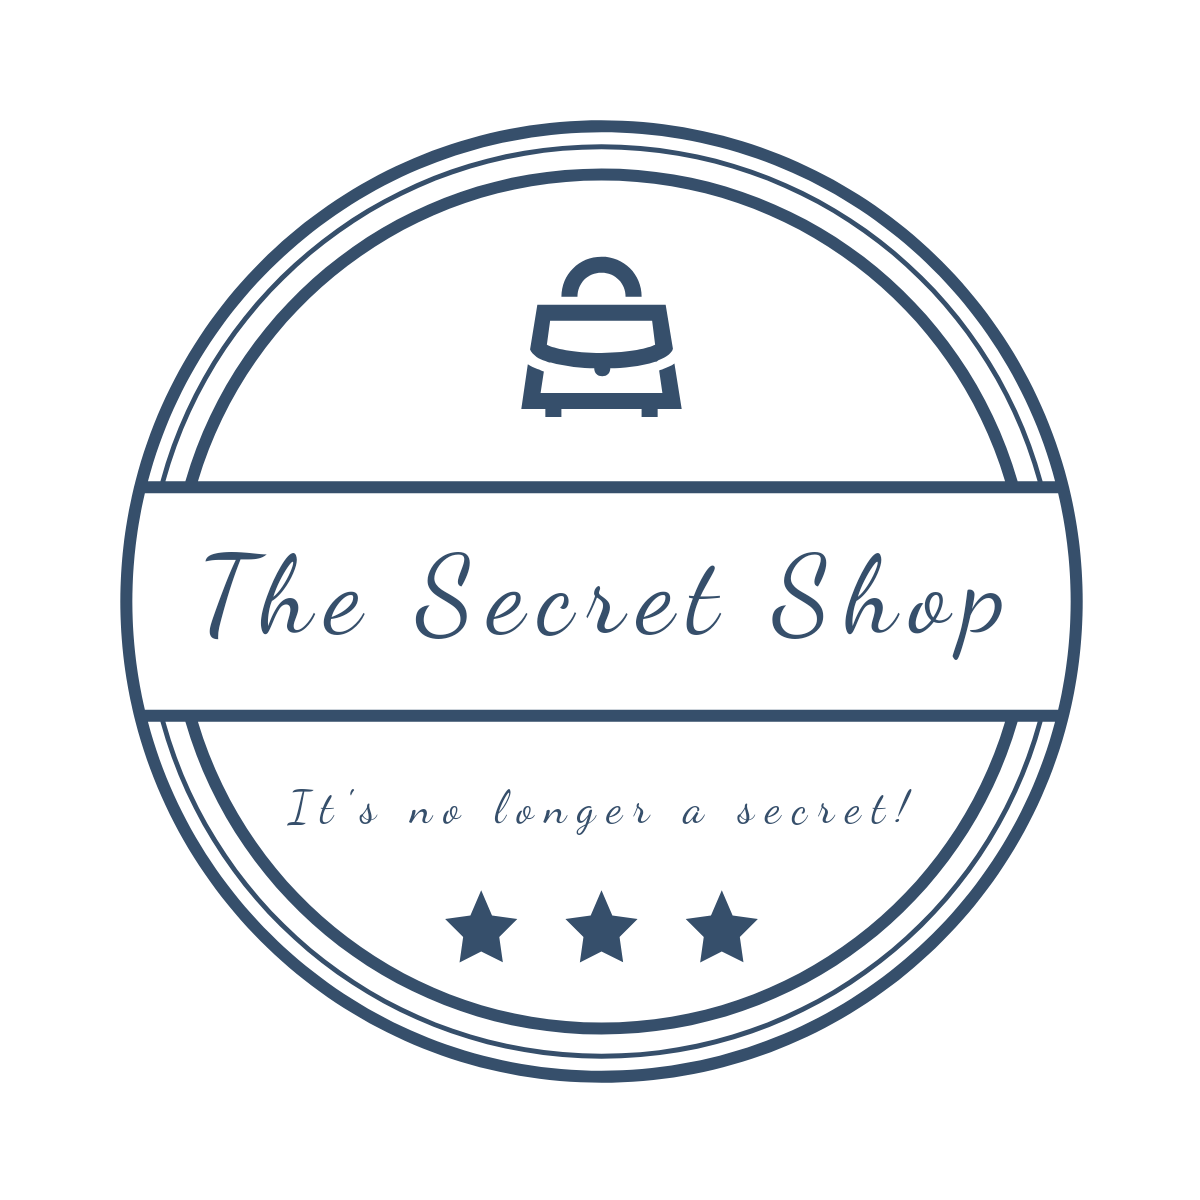 The Secret Shop